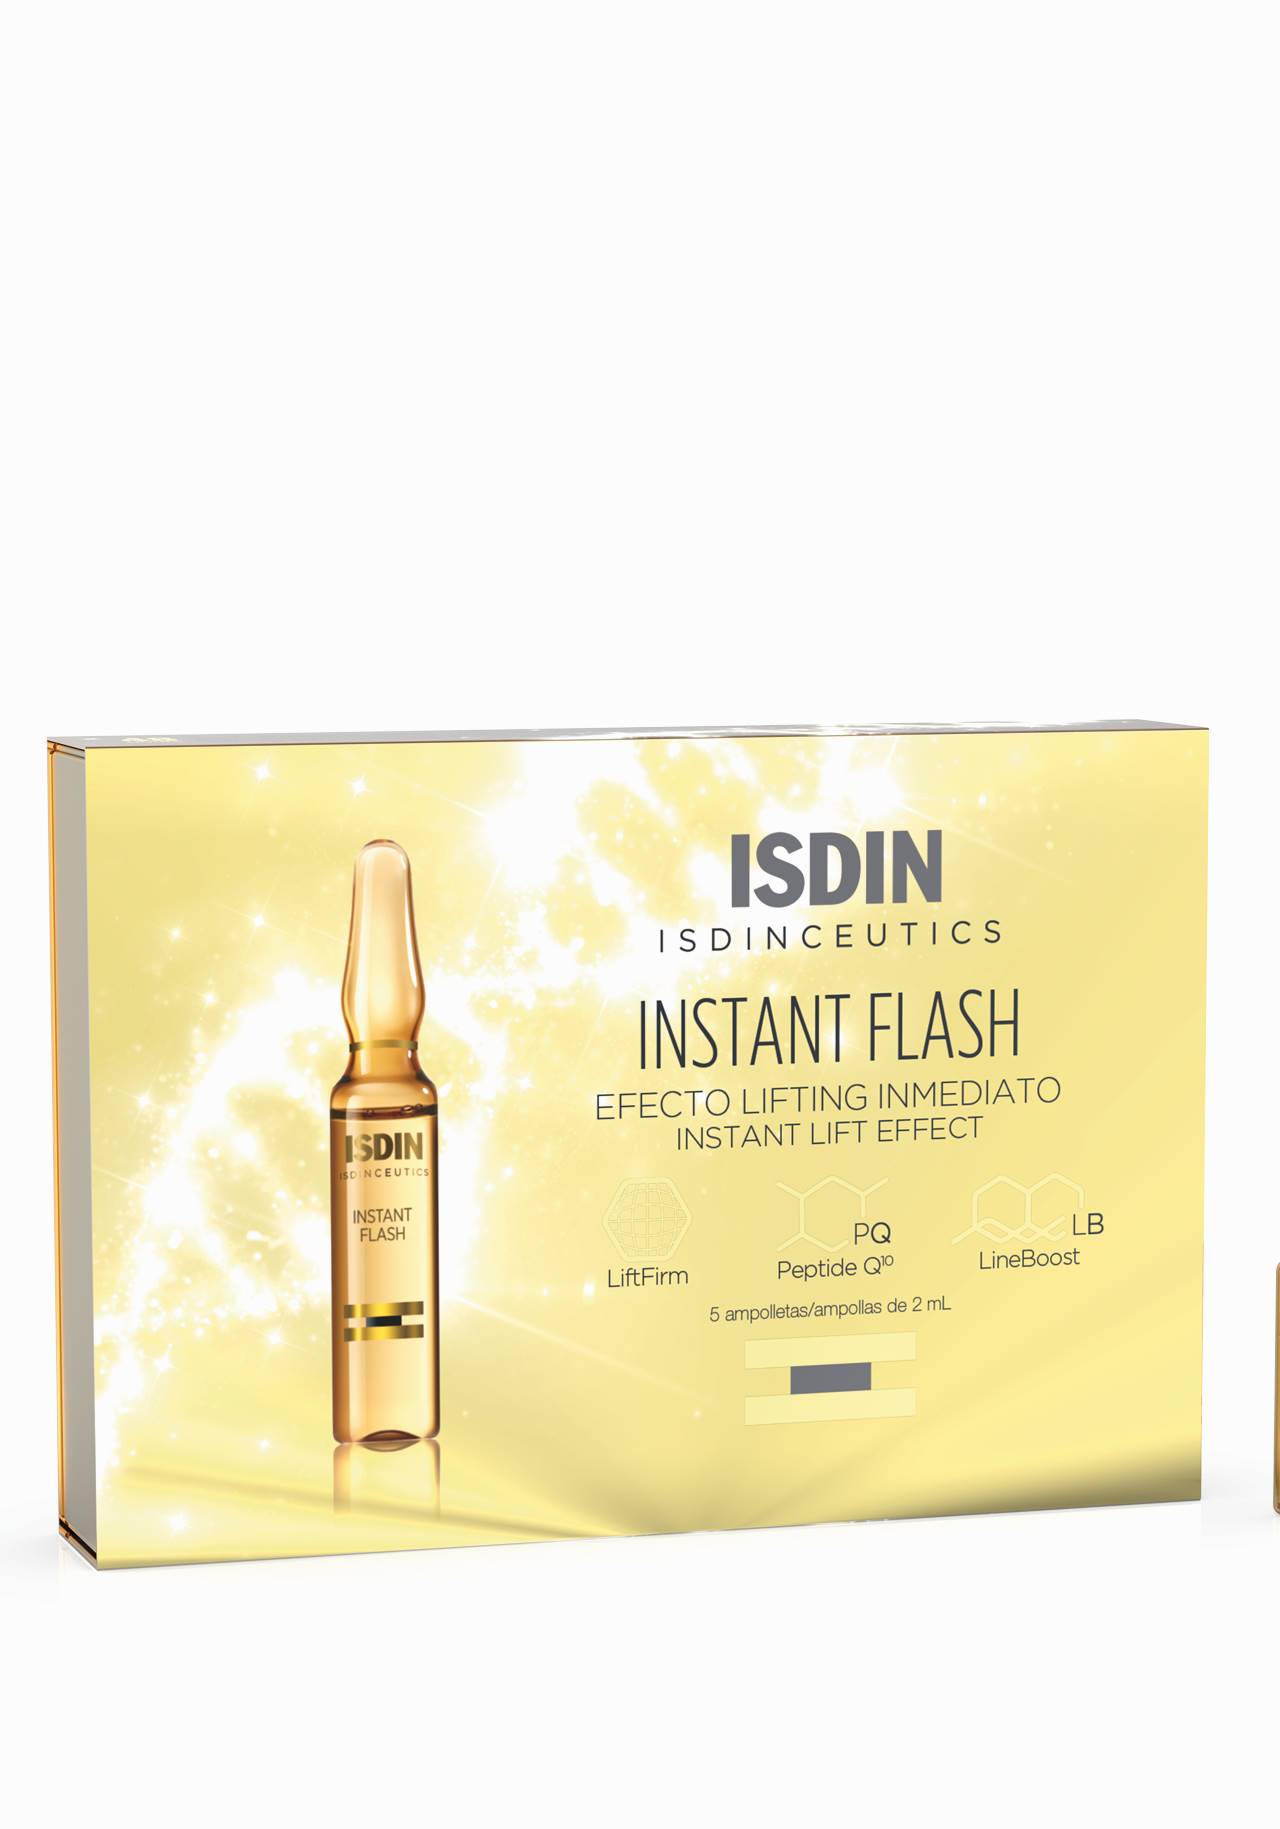 Isdinceutics Instant Flash, ampollas de Isdin  Este es el producto antiedad que más se vende en farmacias y no es una crema